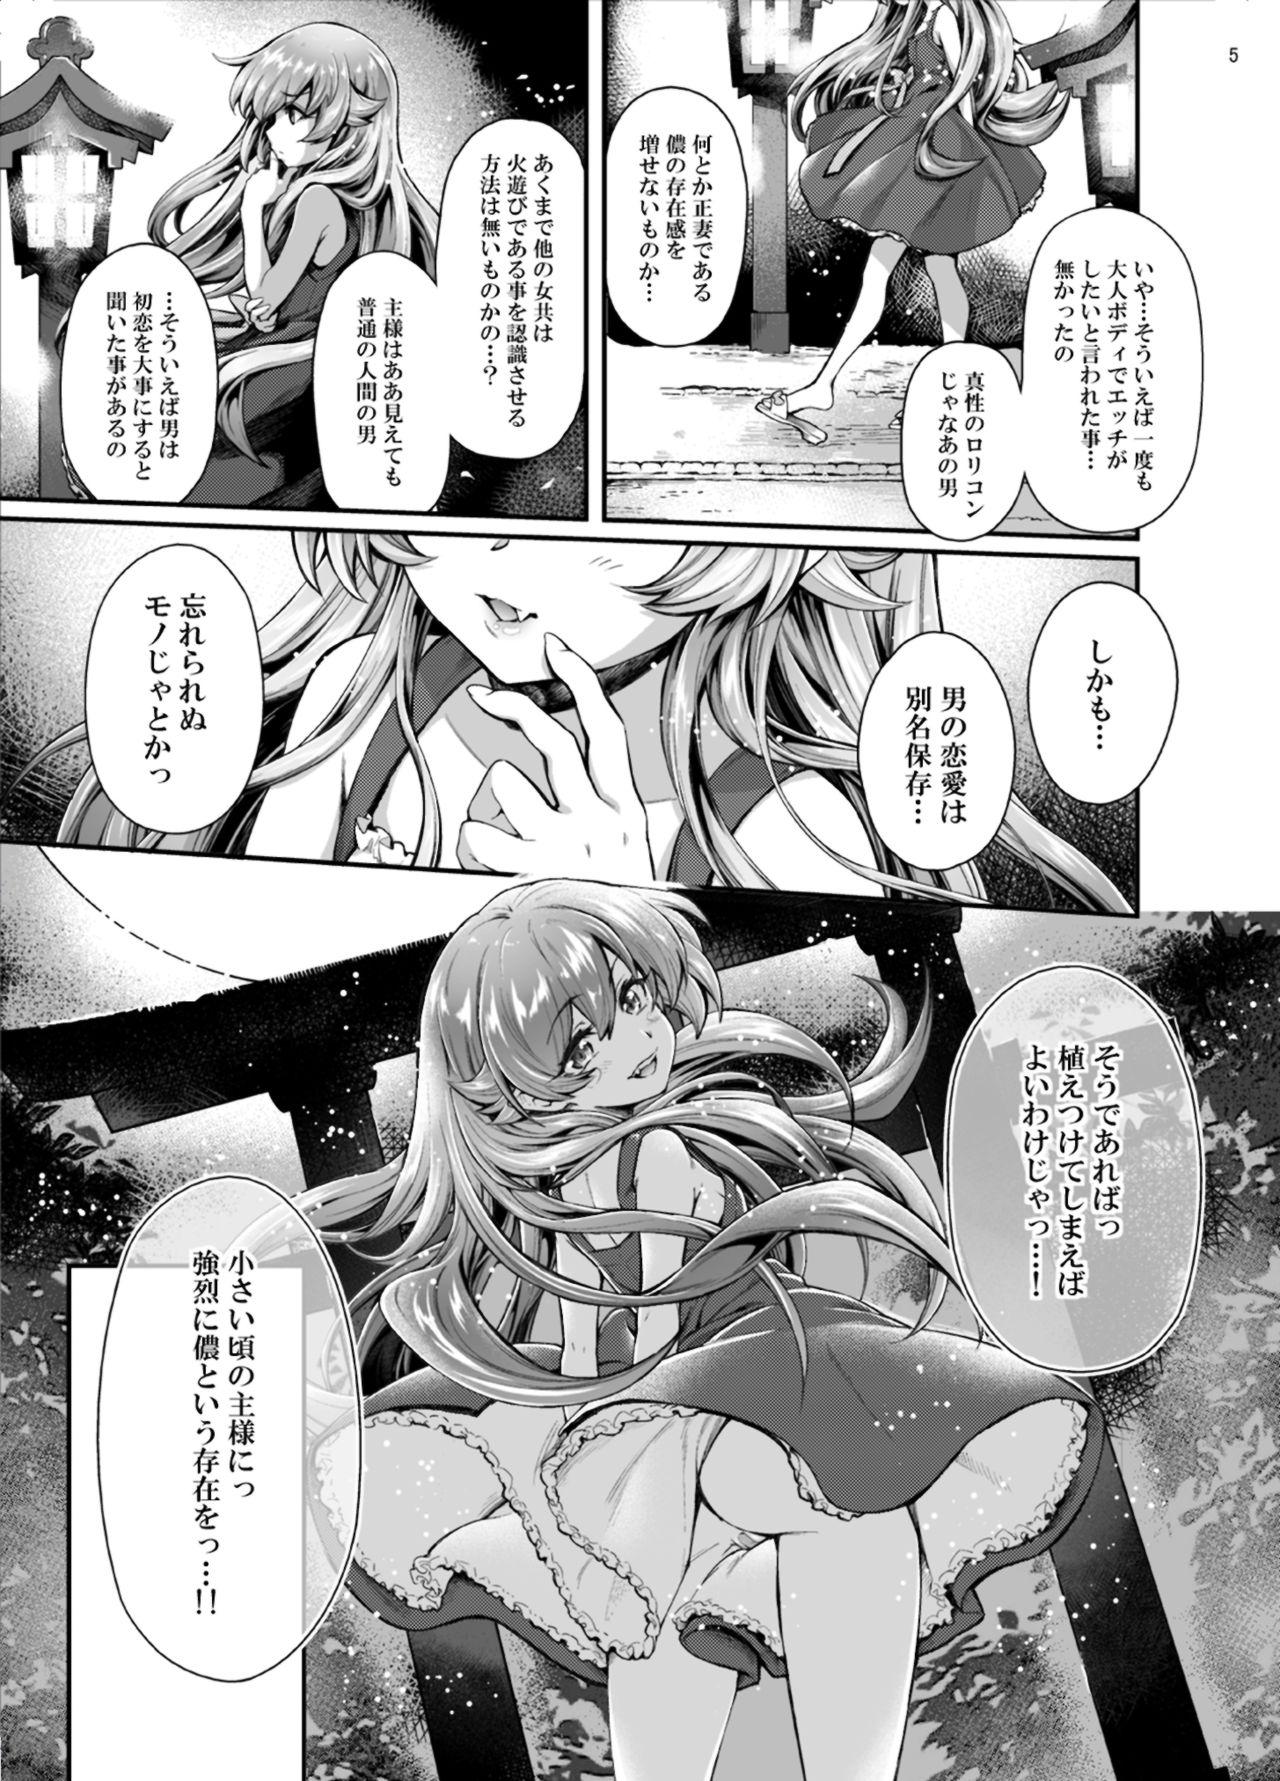 Relax Pachimonogatari Part 17: Shinobu Drama - Bakemonogatari Gay Cumshots - Page 5